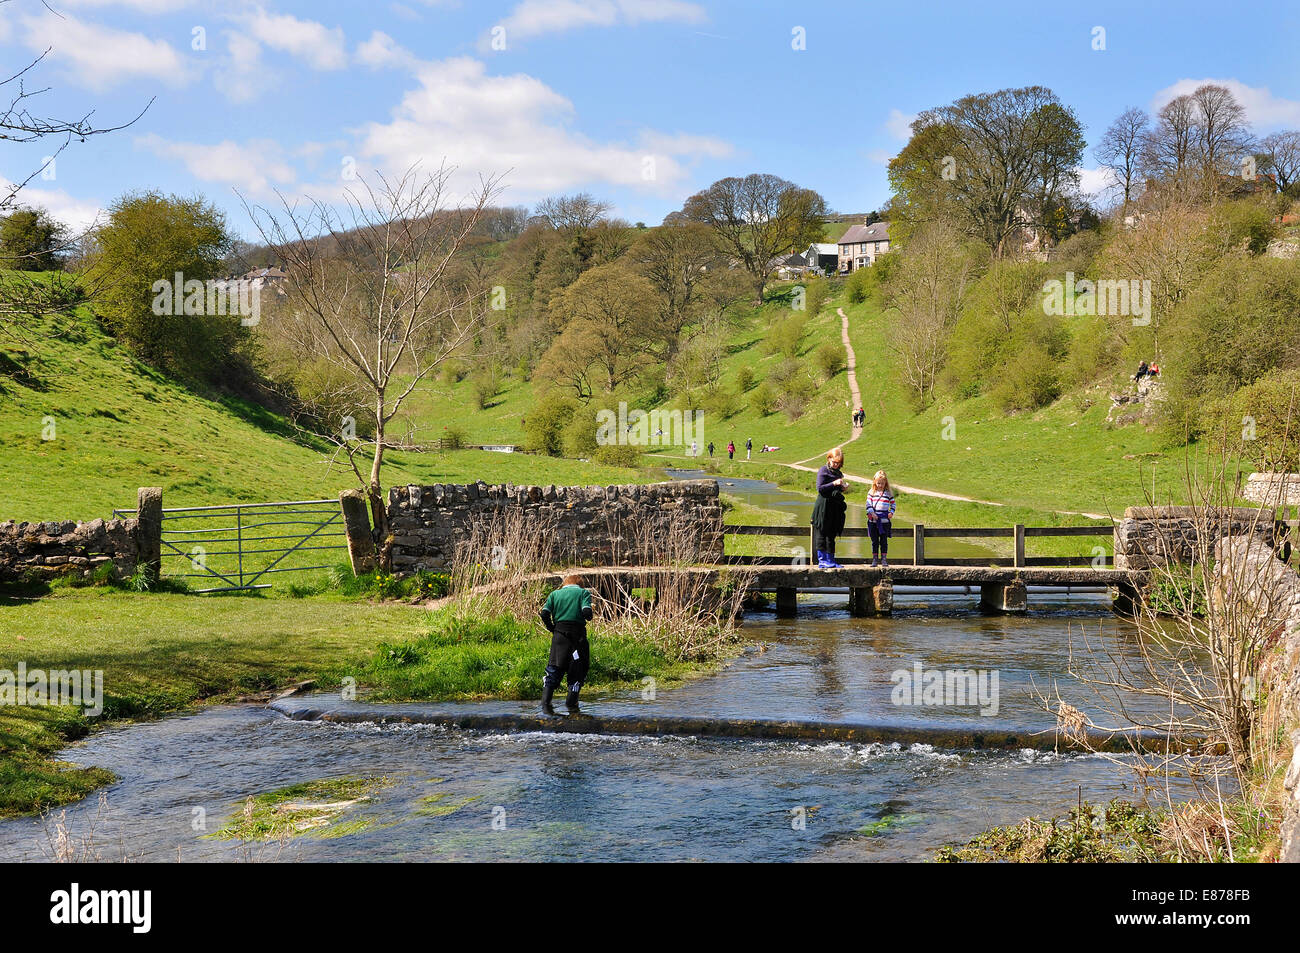 Bradford Dale, près de Attalens, Derbyshire, Peak District National Park, Royaume-Uni. La mère et la fille sont sur un vieux pont battant. Banque D'Images